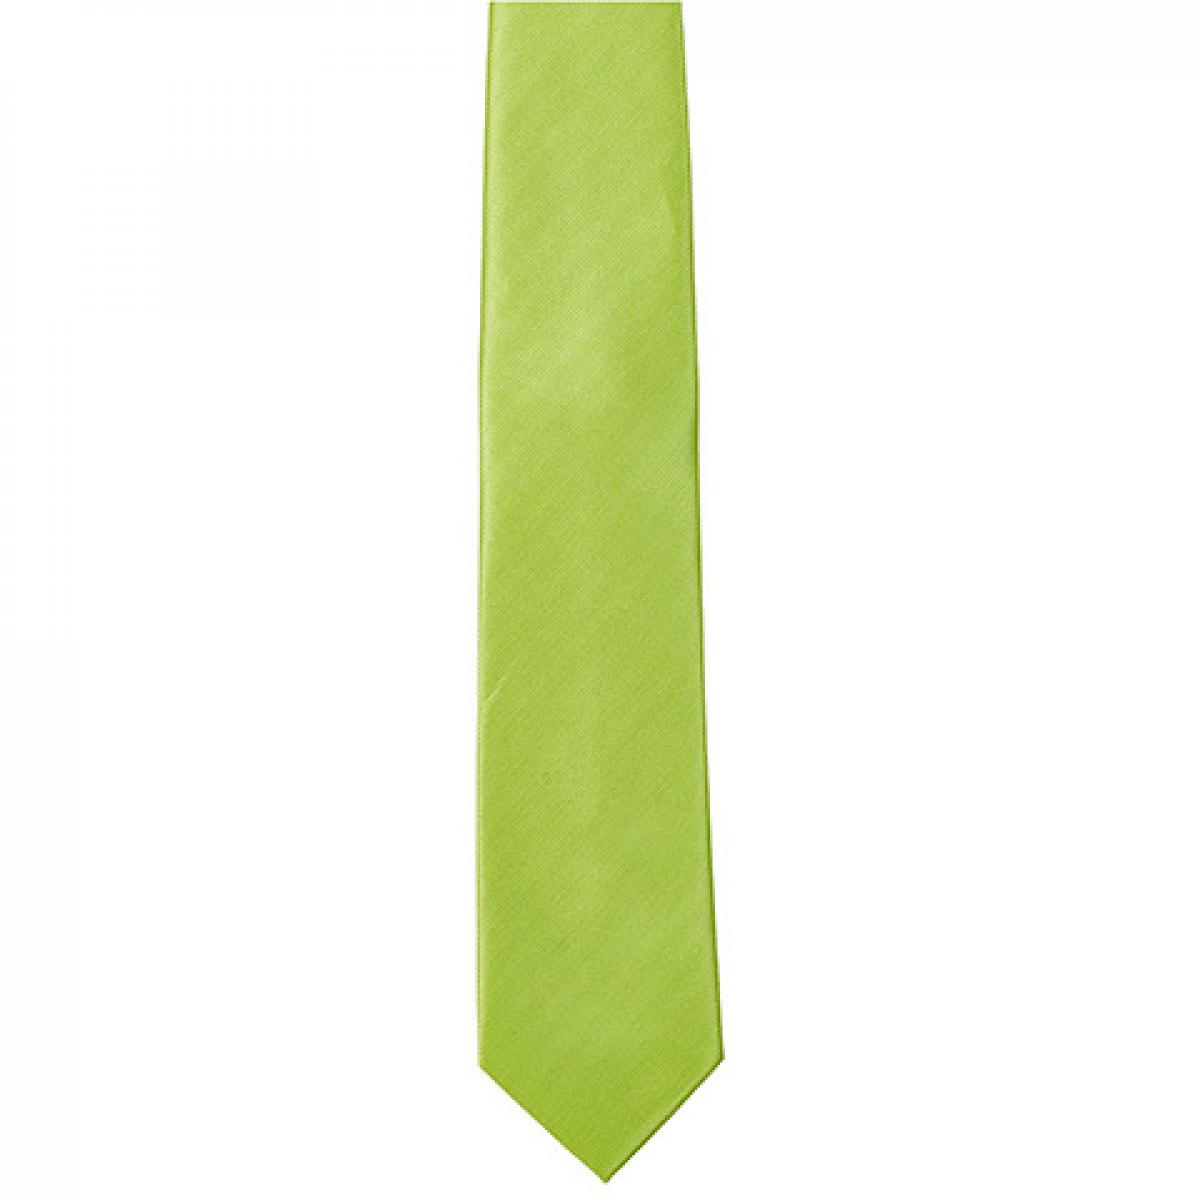 Hersteller: TYTO Herstellernummer: TT902 Artikelbezeichnung: Twill Tie / 144 x 8,5cm Farbe: Lime